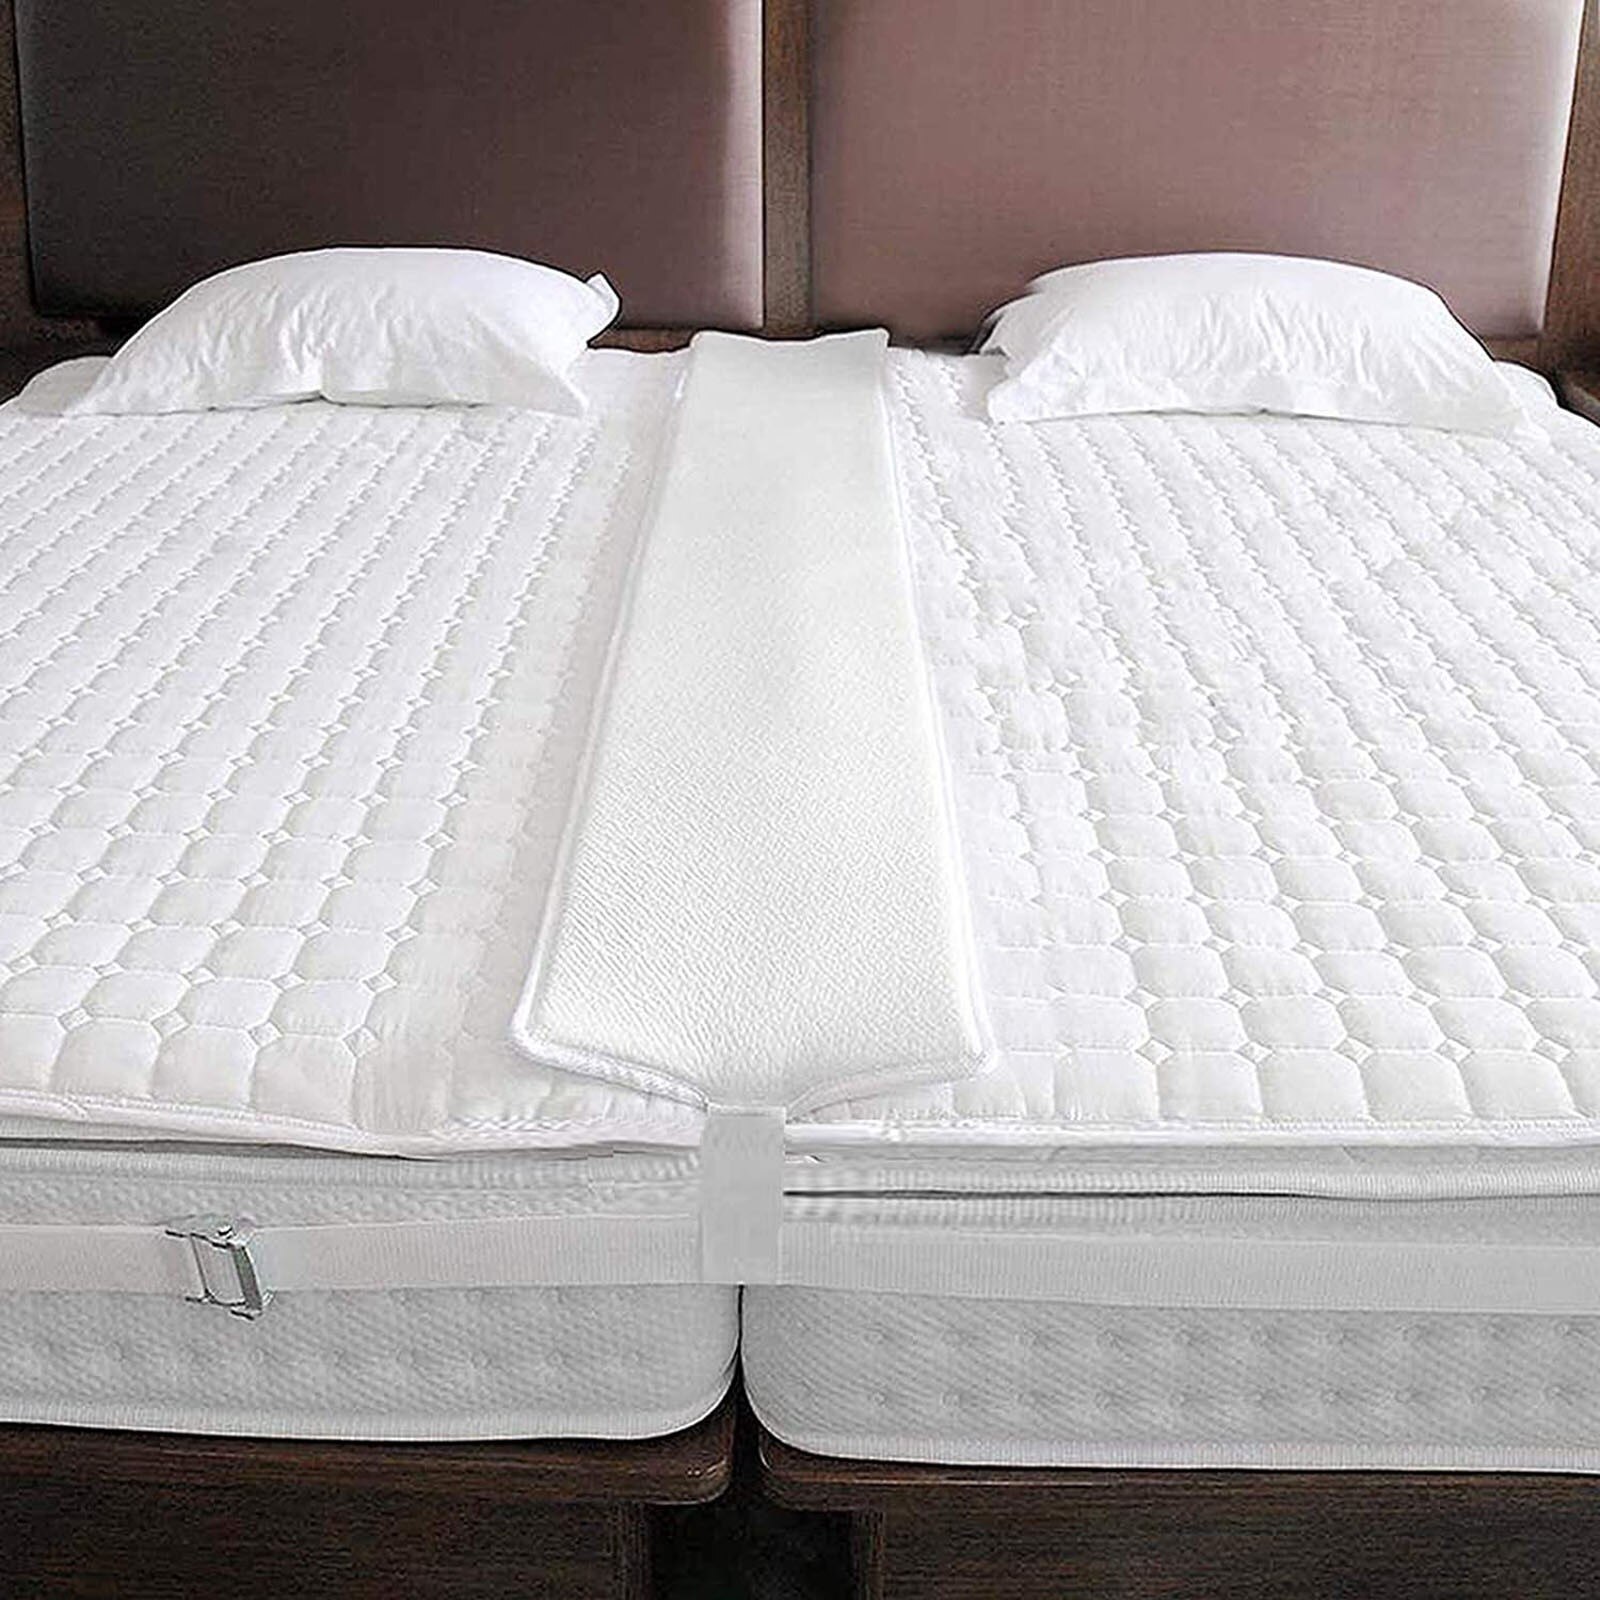 Bed Brug Matras Connector Twin Aan Koning Converter Kit Bed Kloof Filler Om Twin Bedden In Connector Voor Gast bed Matras